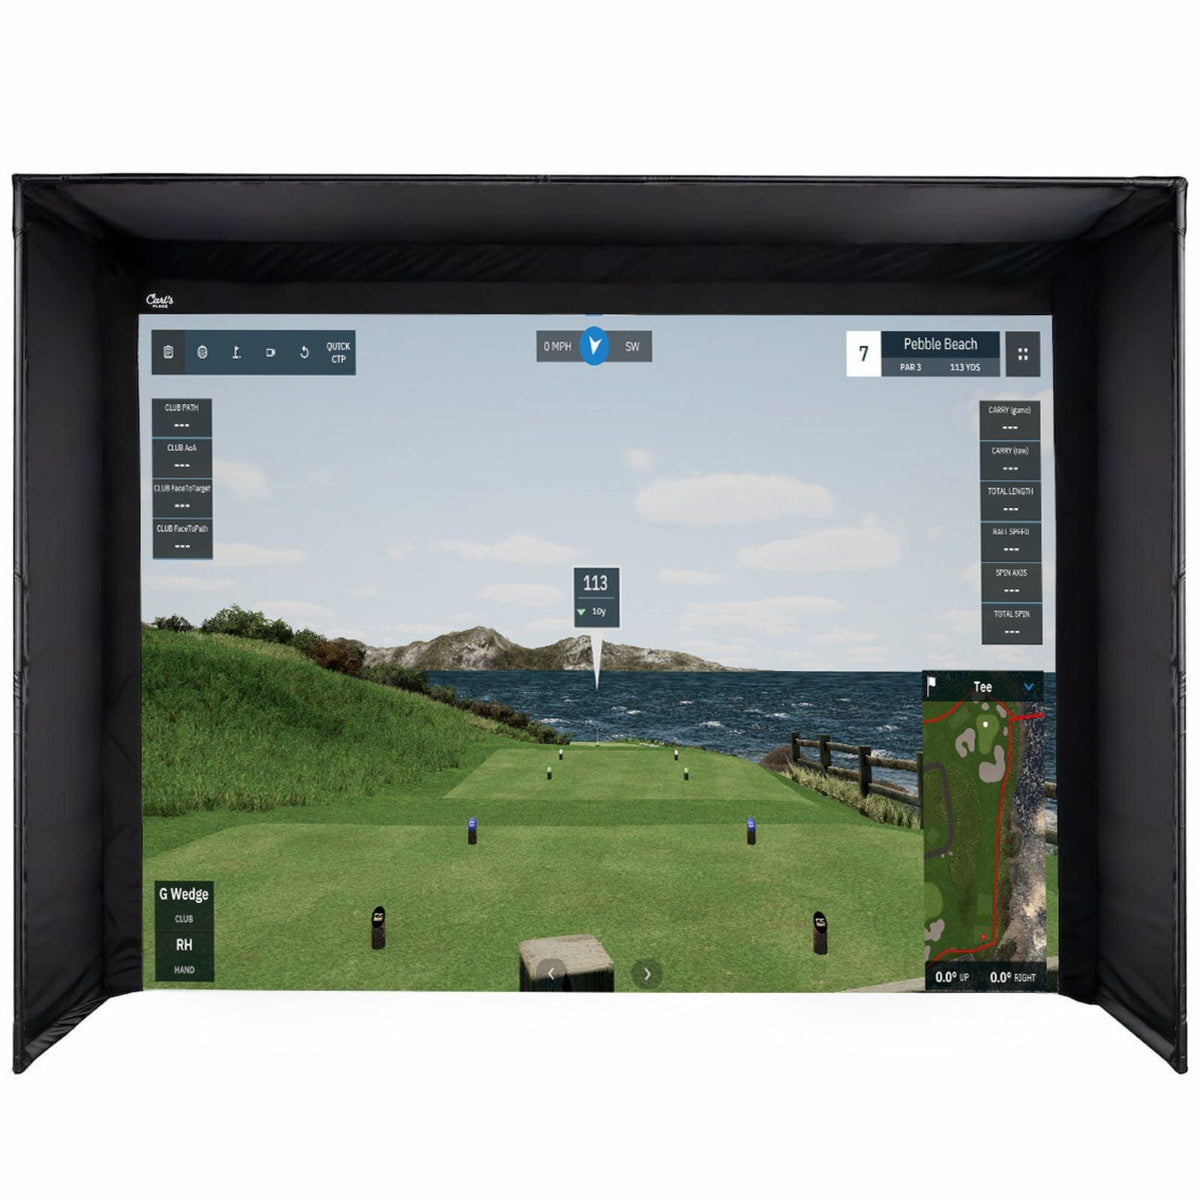 Motion Capture Platform Built For Golf Goes Beyond Hitting Bays